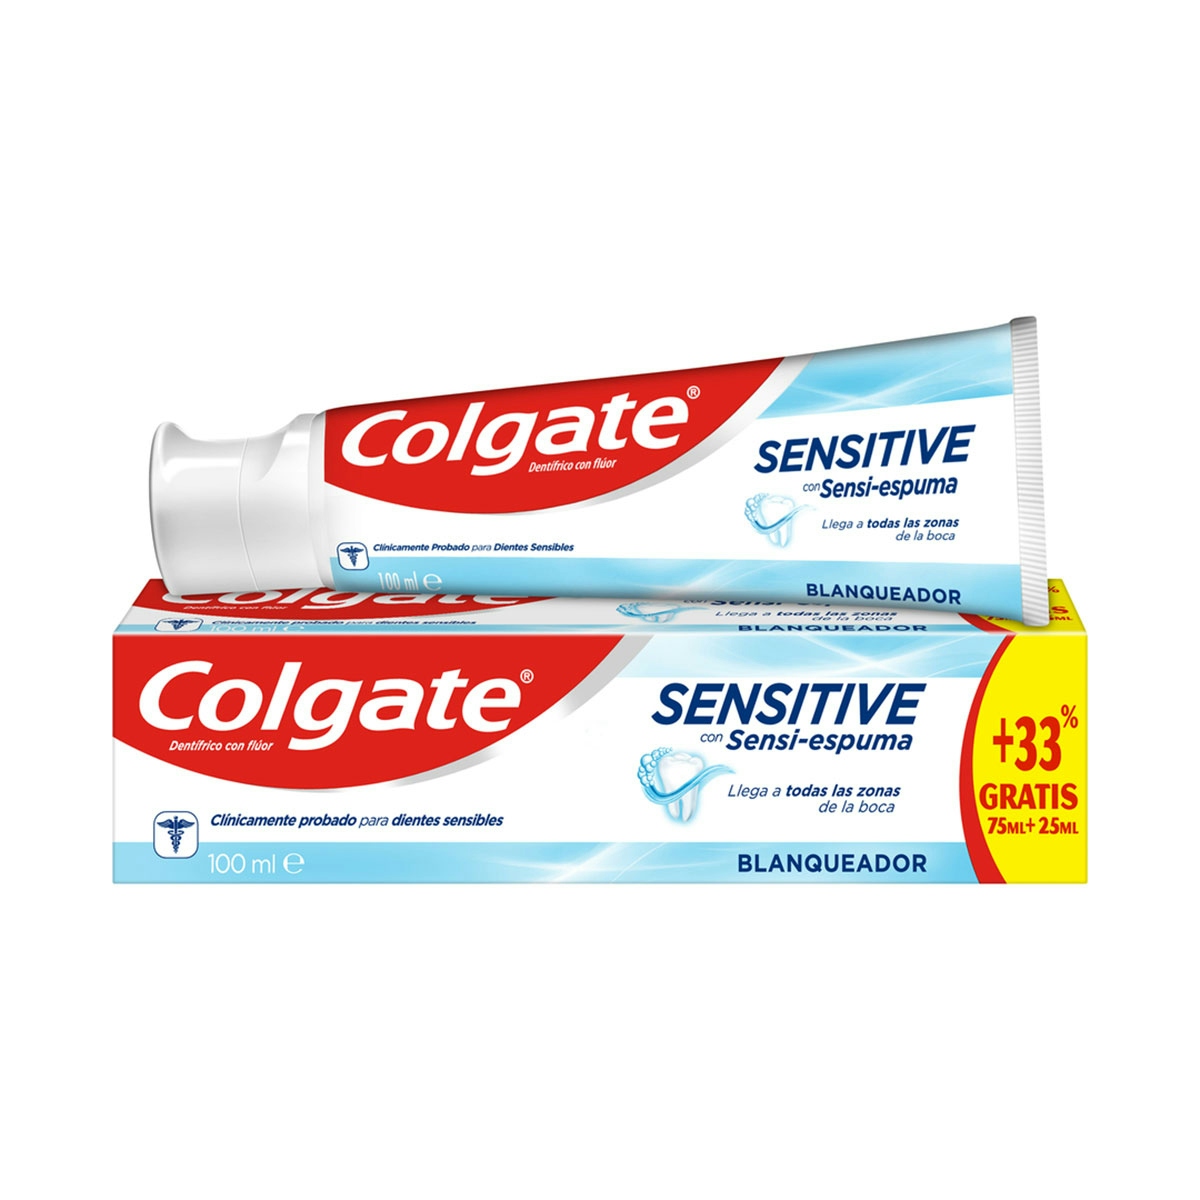 Pasta de dientes blanqueadora Colgate Sensitive con Sensi-espuma para dientes sensibles 100ml